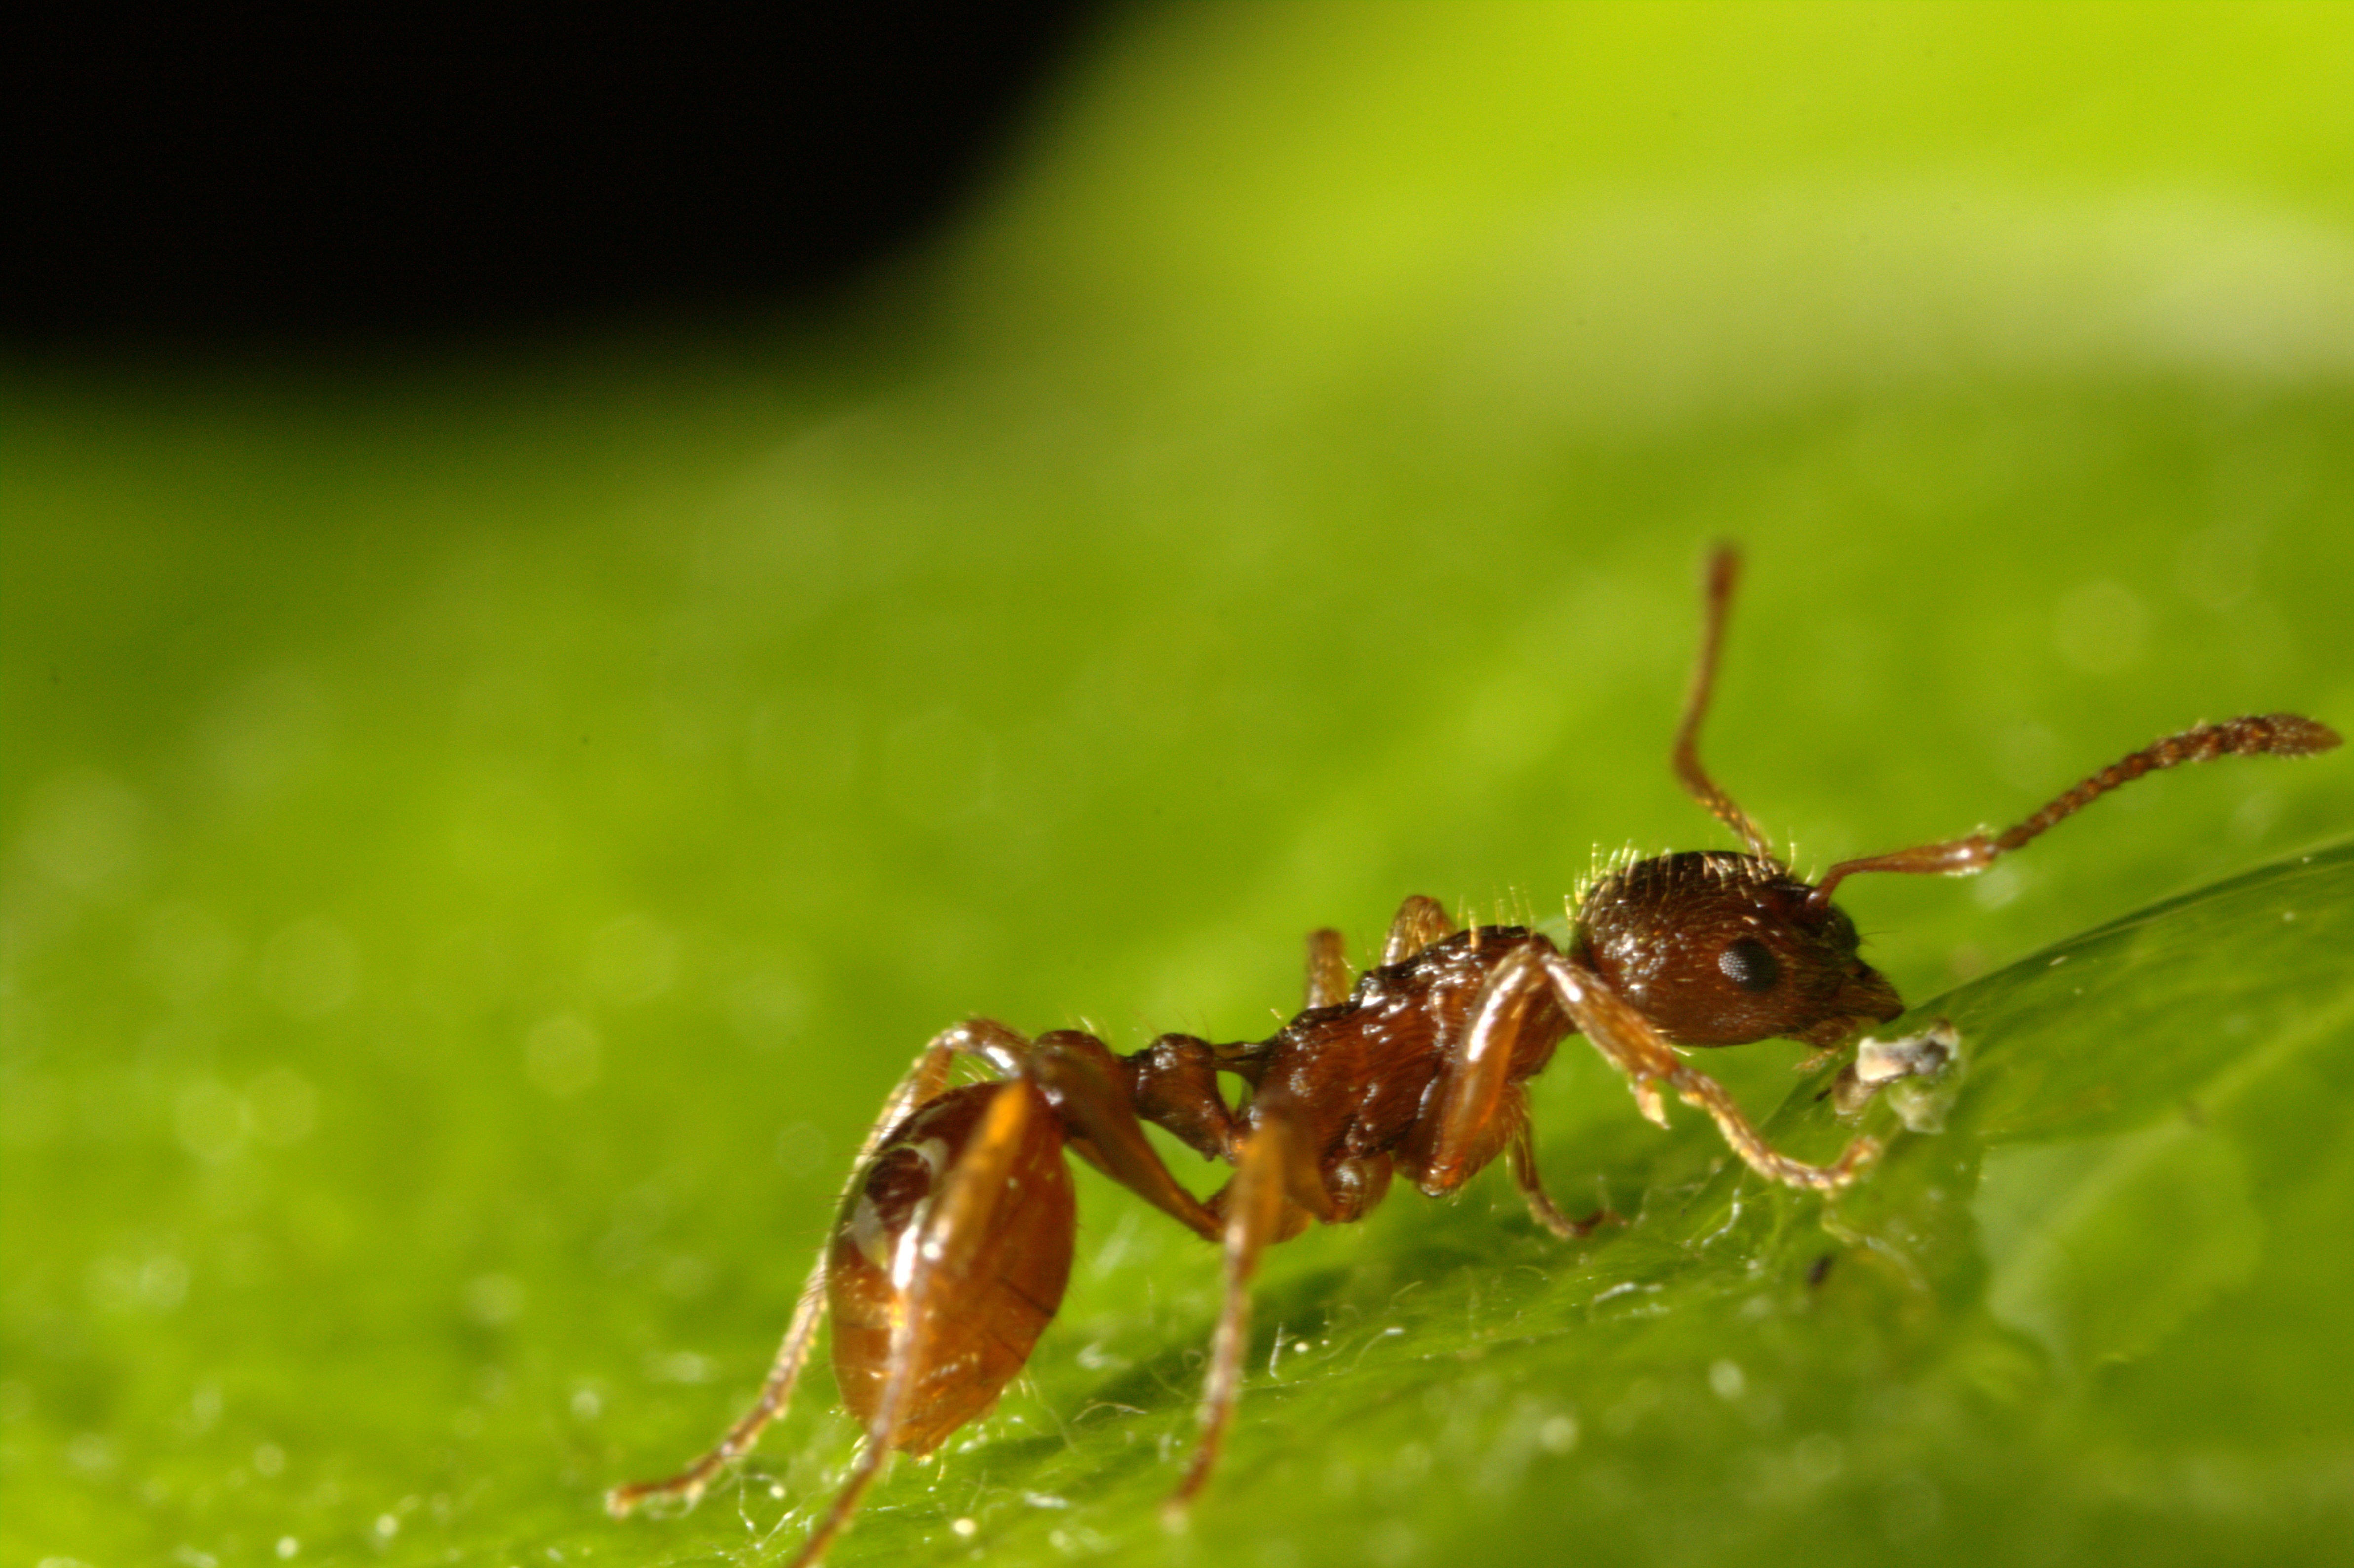 Myrmica rubra. Рыжая мирмика муравей. Solenopsis Invicta. Огненные муравьи (Solenopsis Invicta). Муравьев заболела